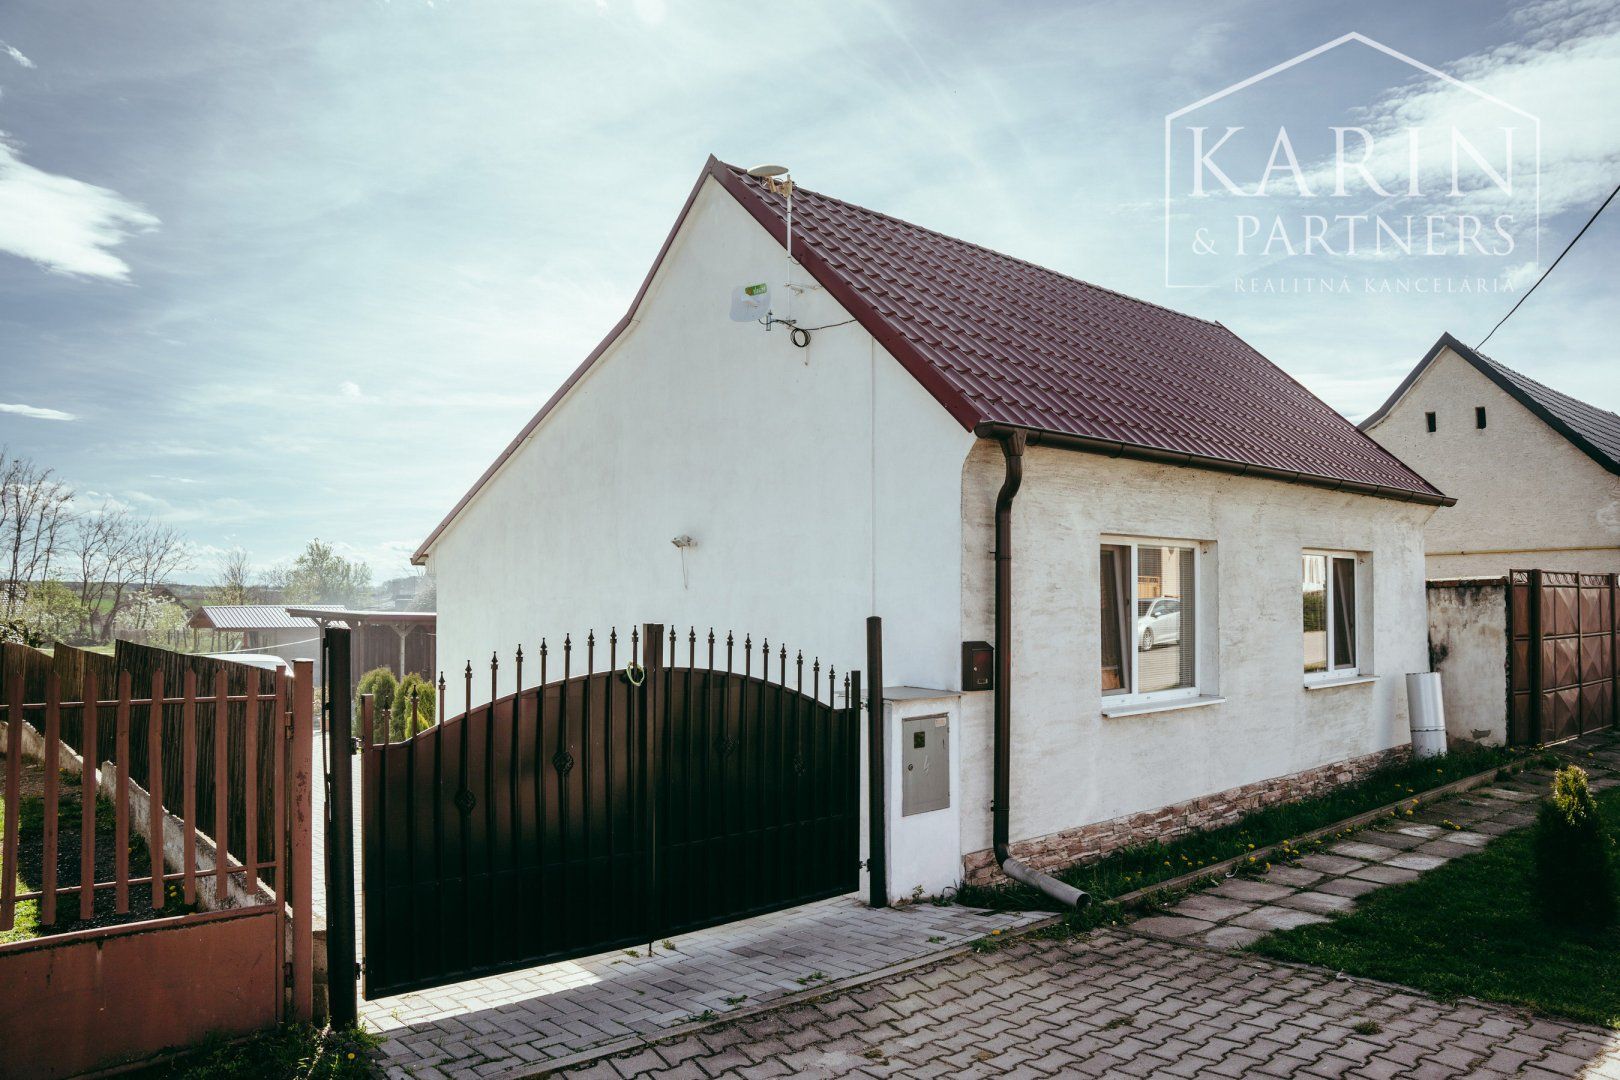 Rodinný dom na predaj v obci Čáry, okr. Senica s krásnym pozemkom